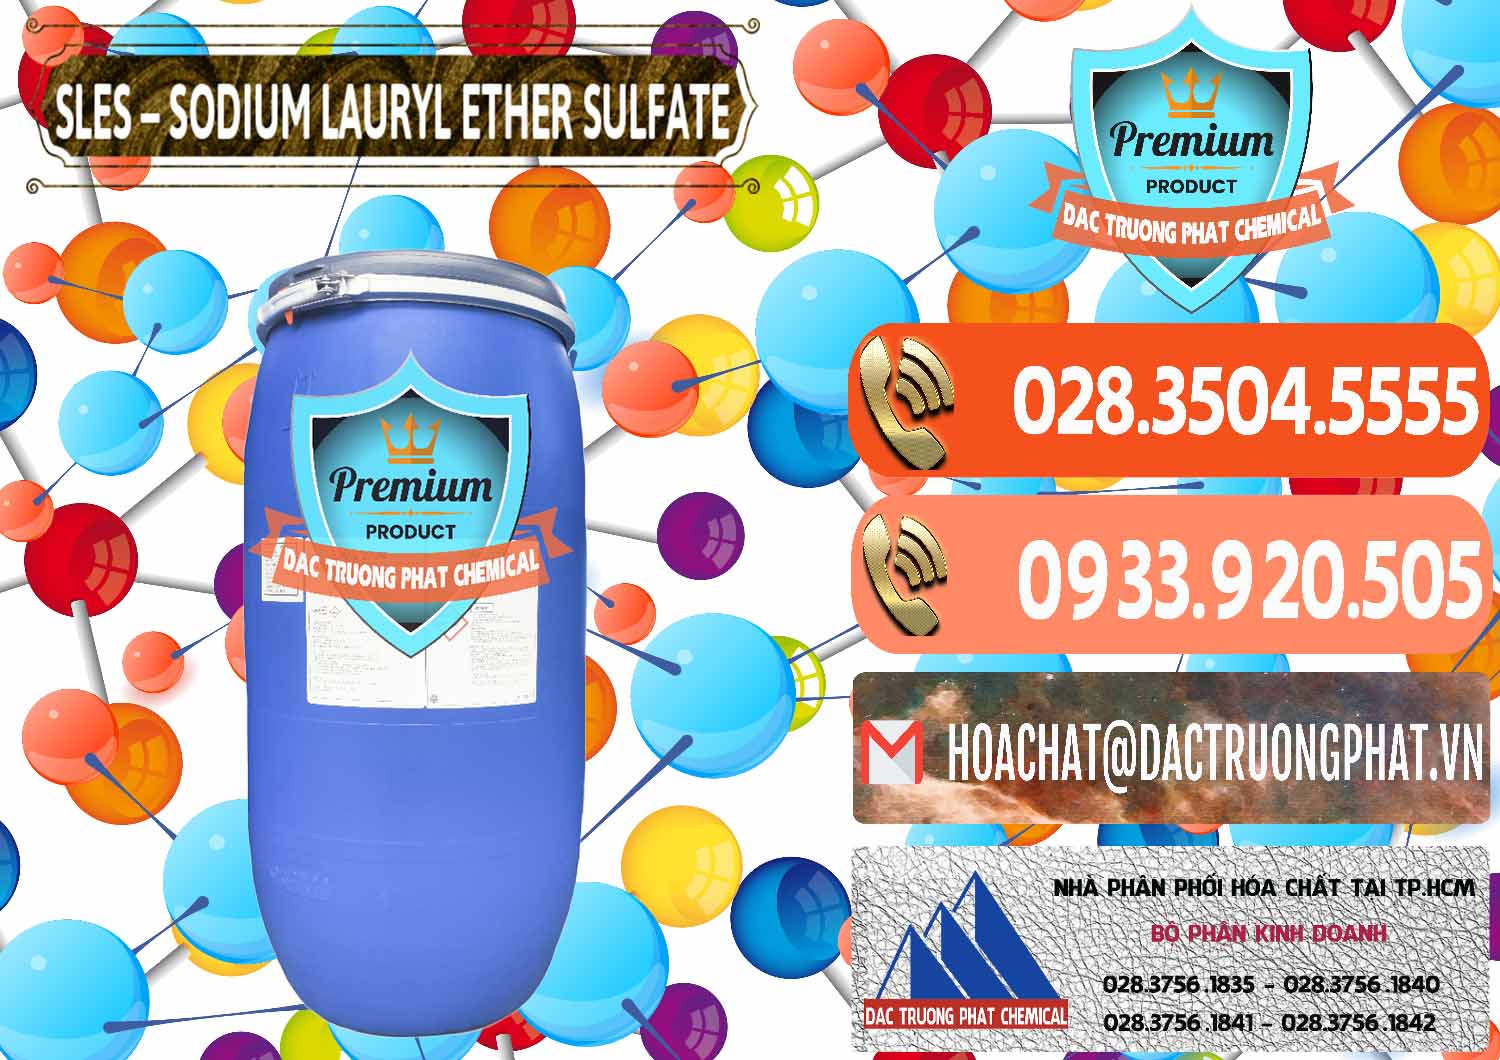 Cty chuyên phân phối _ bán Chất Tạo Bọt Sles - Sodium Lauryl Ether Sulphate Kao Indonesia - 0046 - Công ty kinh doanh _ cung cấp hóa chất tại TP.HCM - hoachatmientay.com